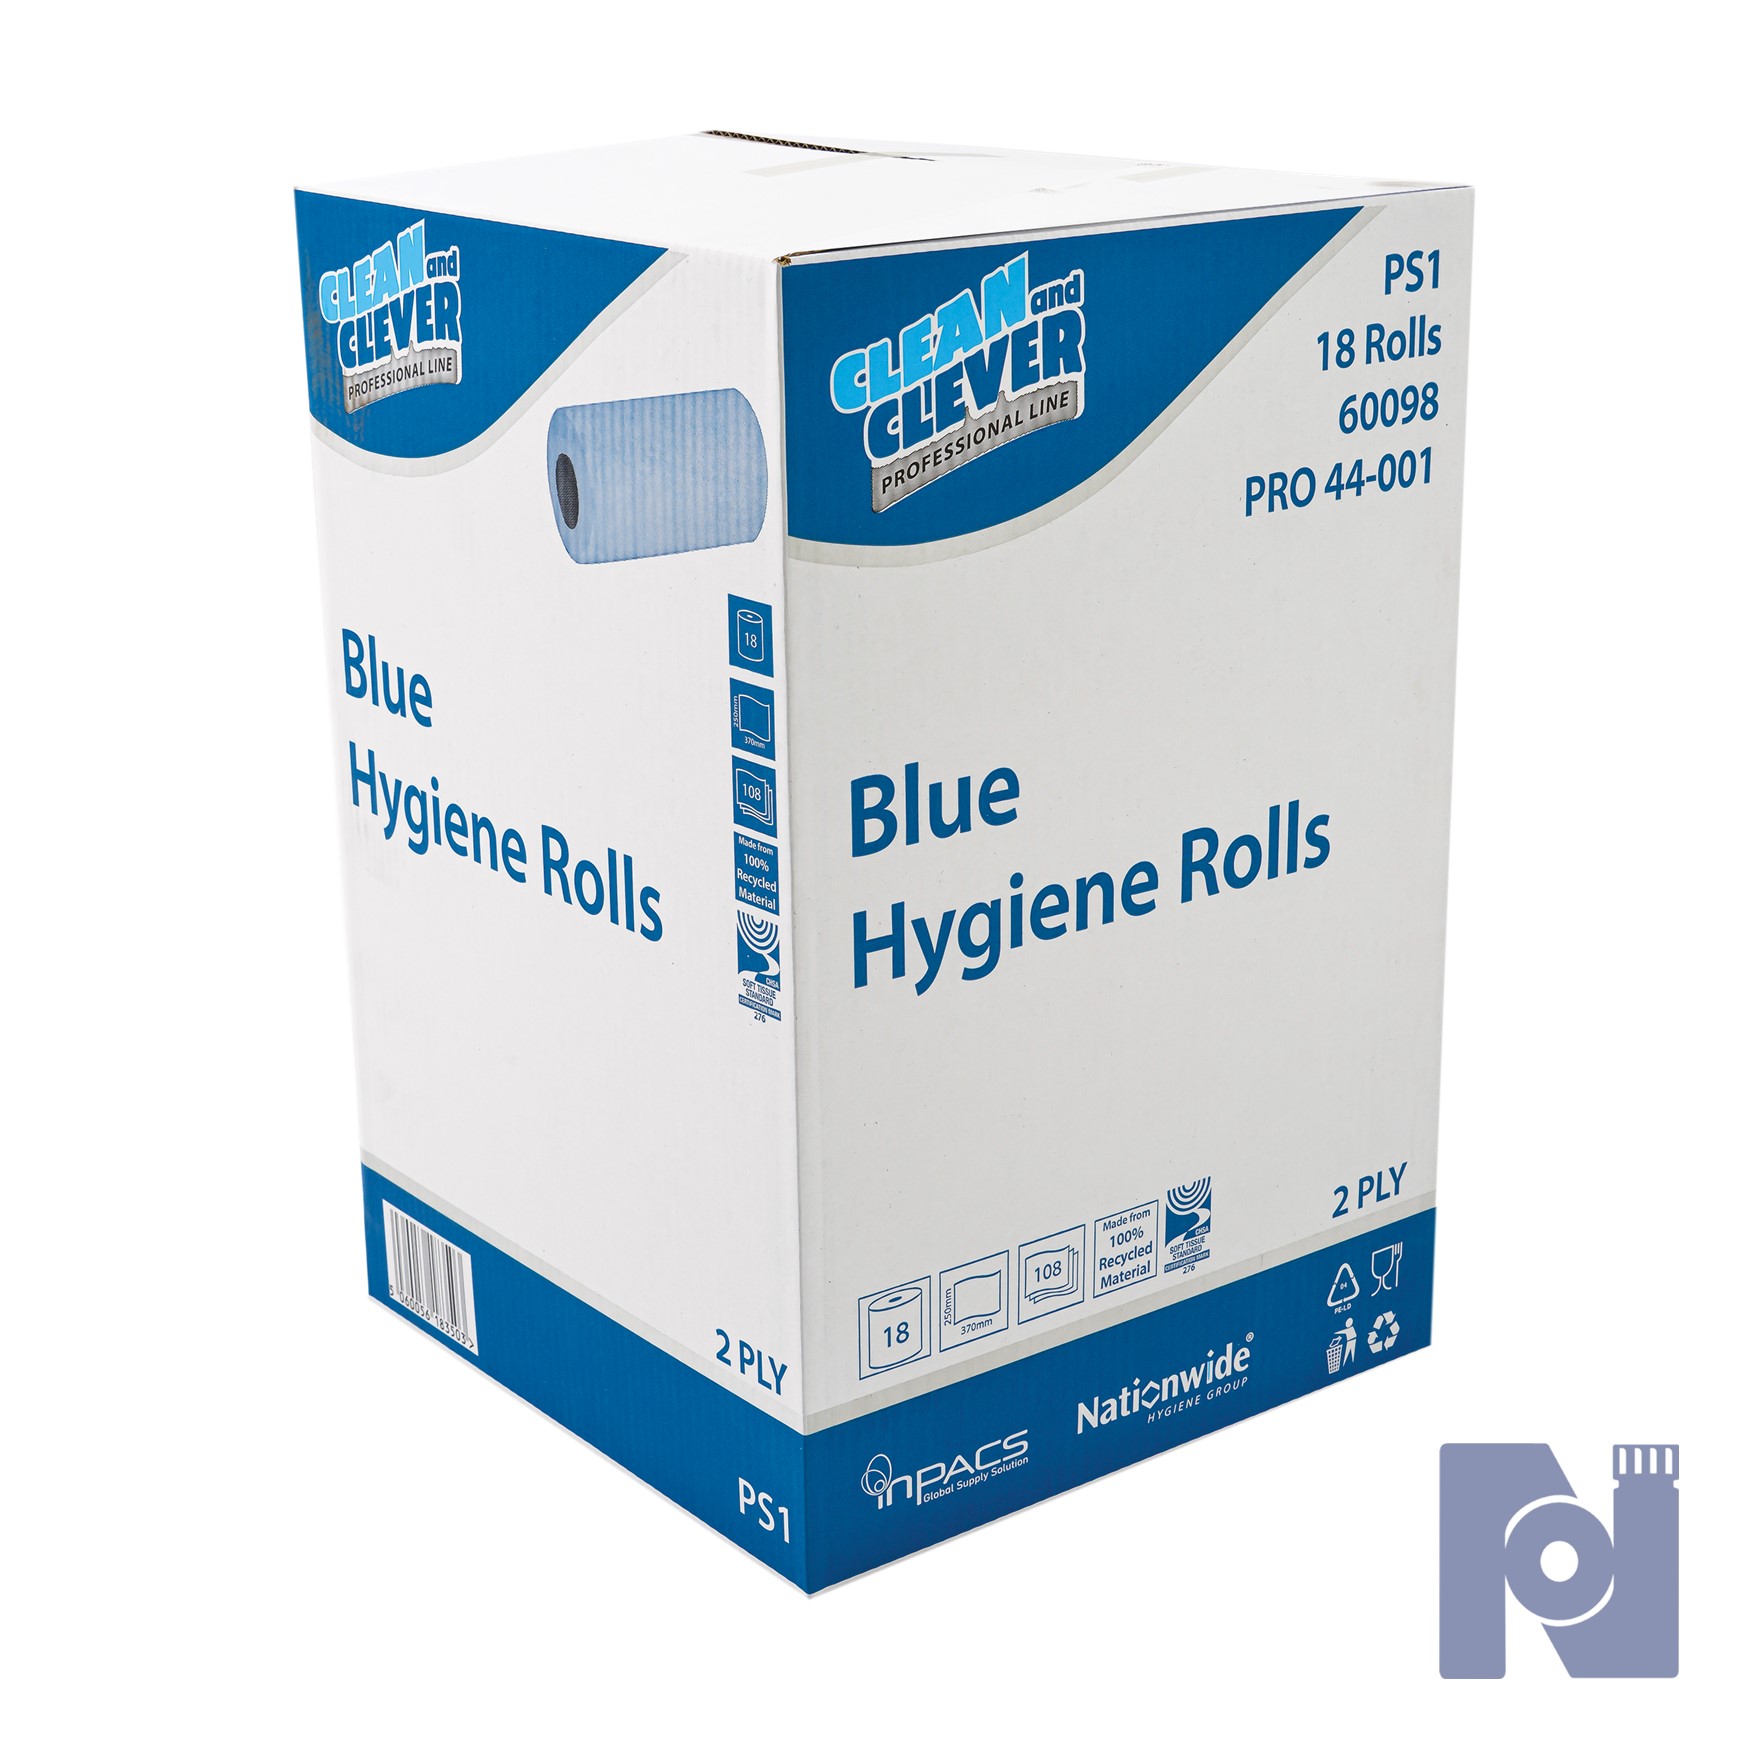 H2B240 Hygiene Roll - Blue 25cm